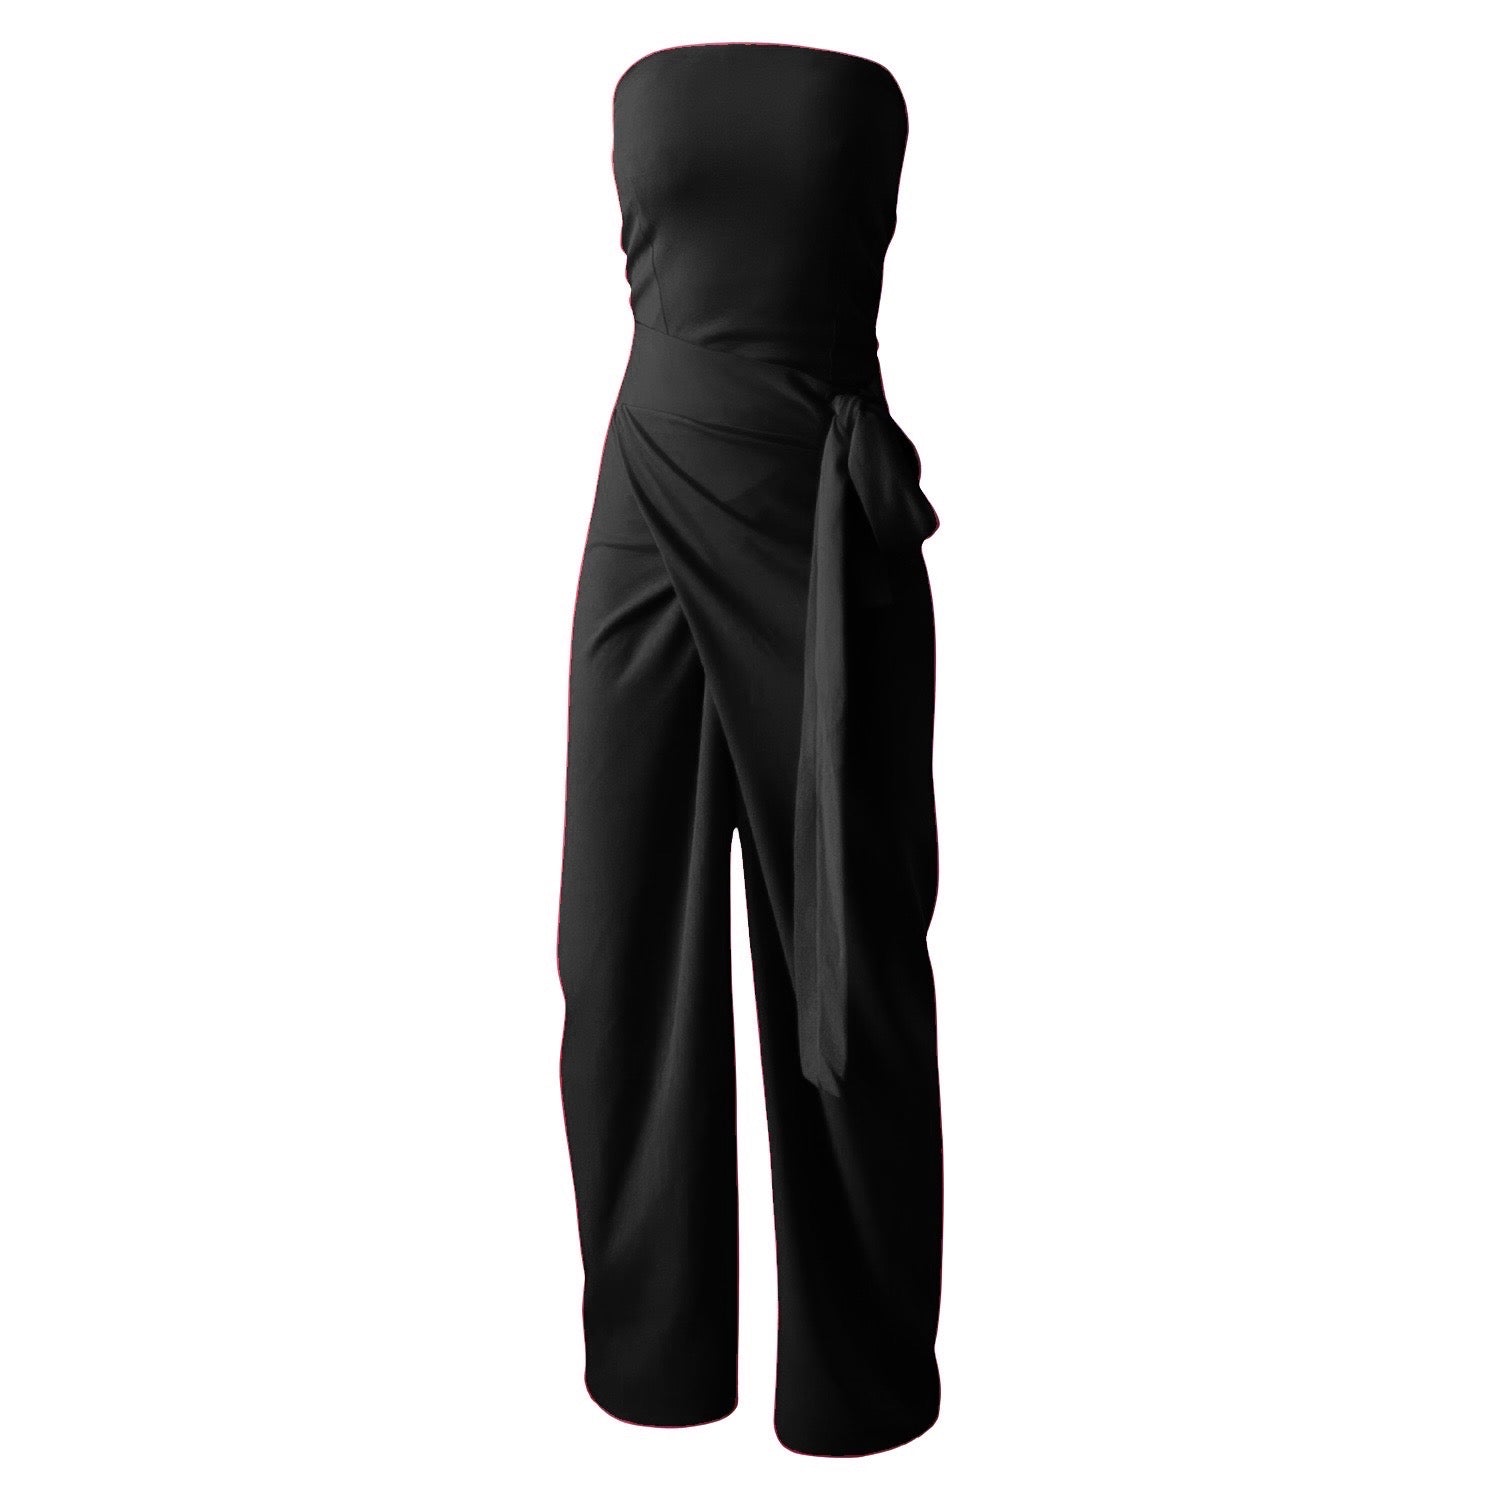 Black Corset & Wrap Wide Leg Trousers Co Ordinates Set S/M London Atelier Byproduct